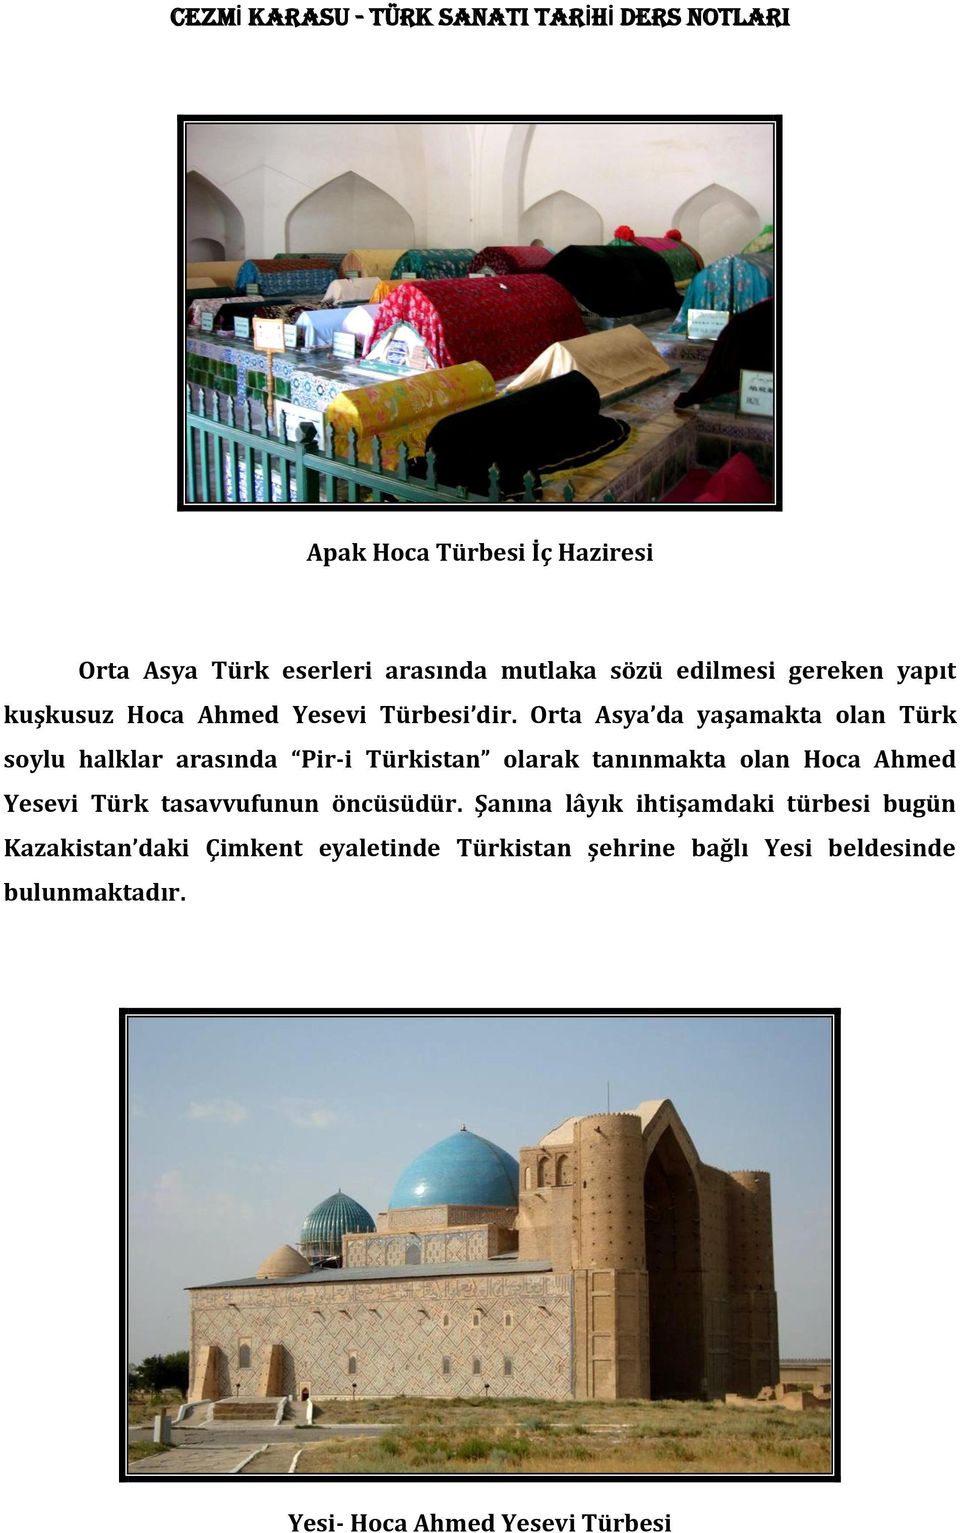 Orta Asya da yaşamakta olan Türk soylu halklar arasında Pir-i Türkistan olarak tanınmakta olan Hoca Ahmed